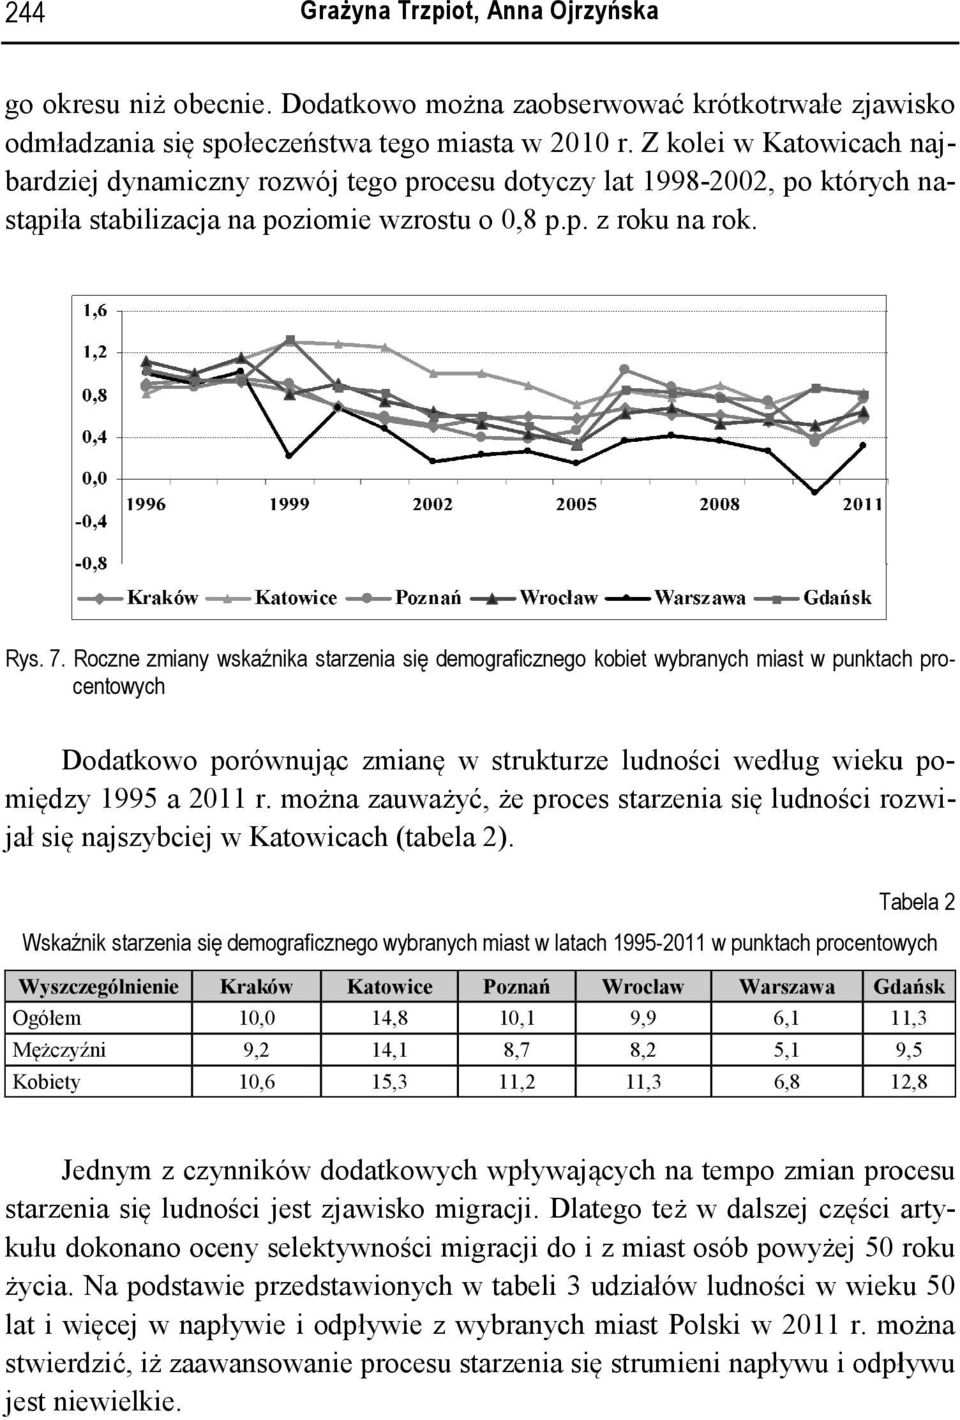 można zauważyć, że proce tarzenia ię ludności rozwi- jał ię najzybciej w Katowicach (tabela 2).